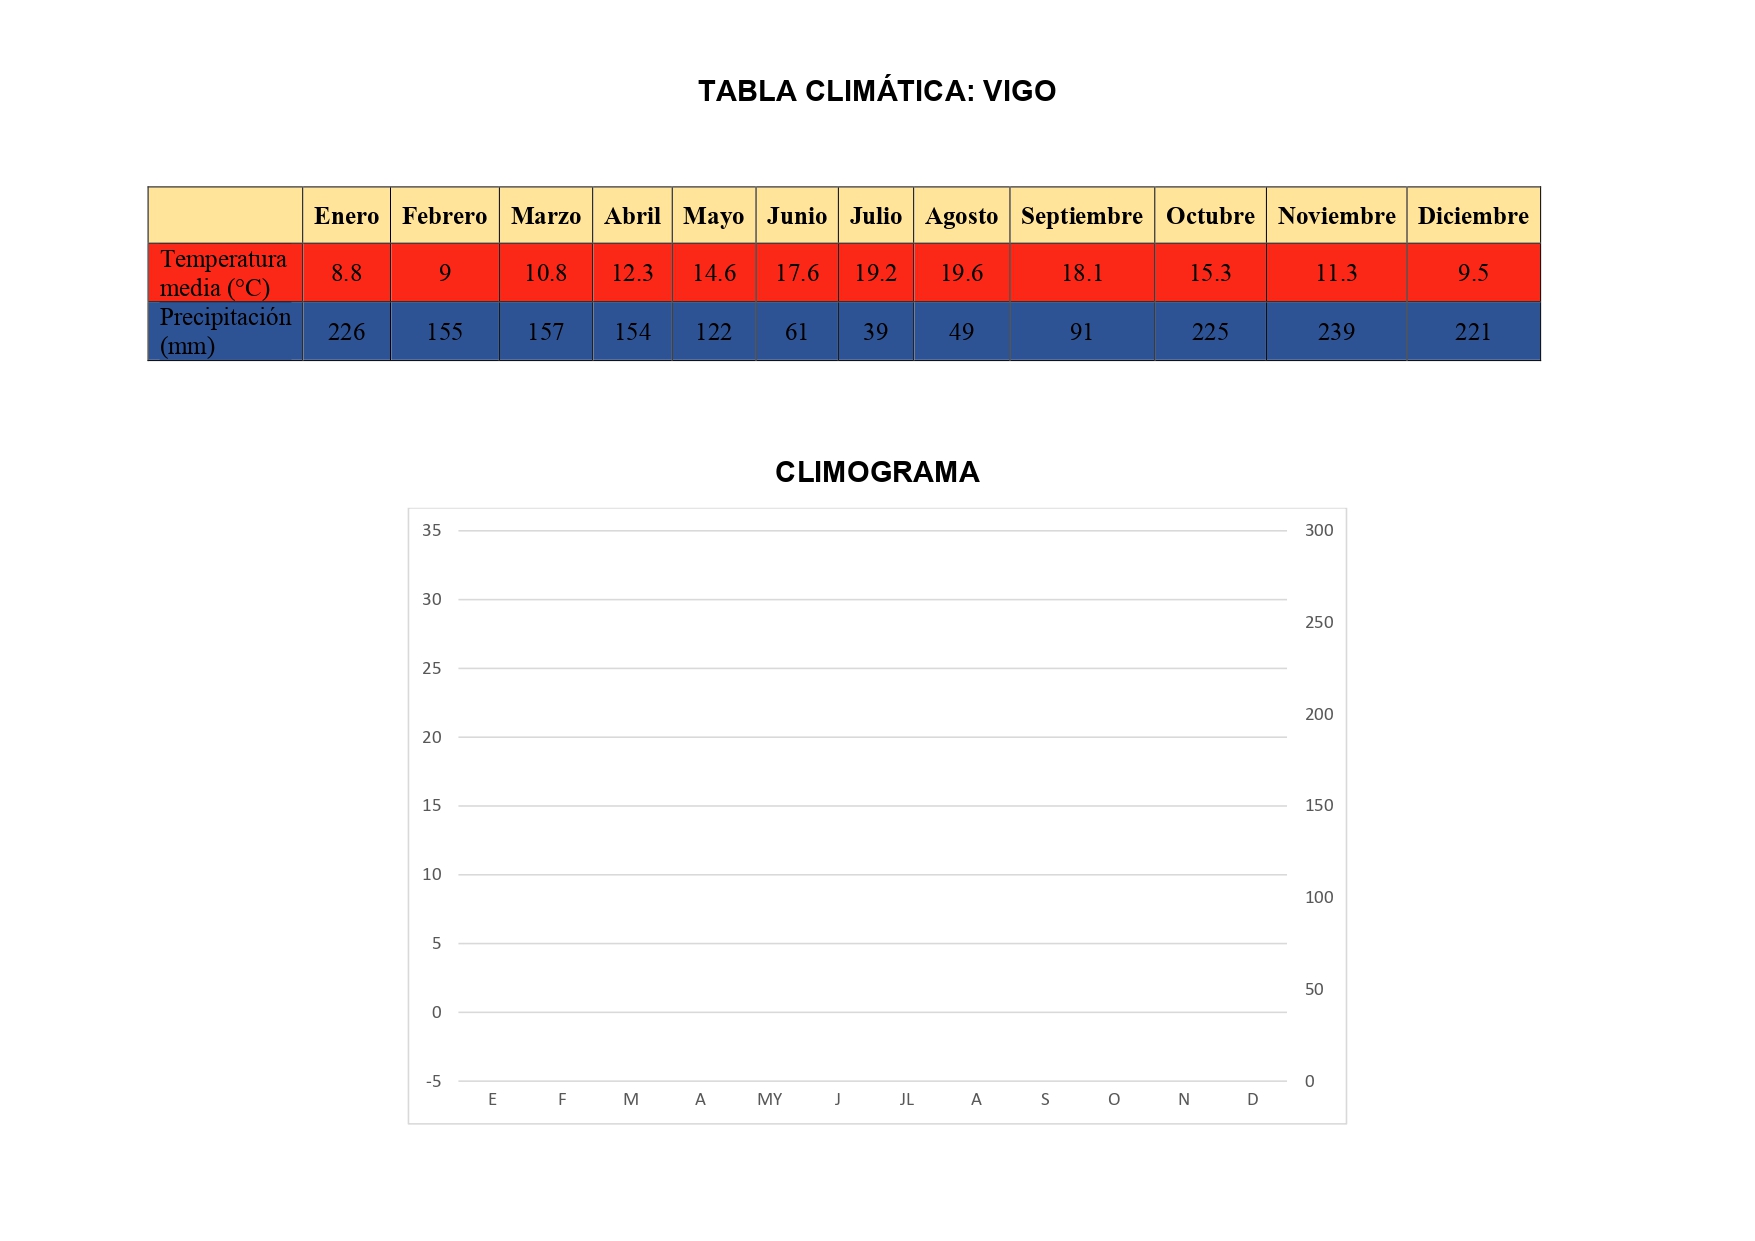 Climograma Vigo